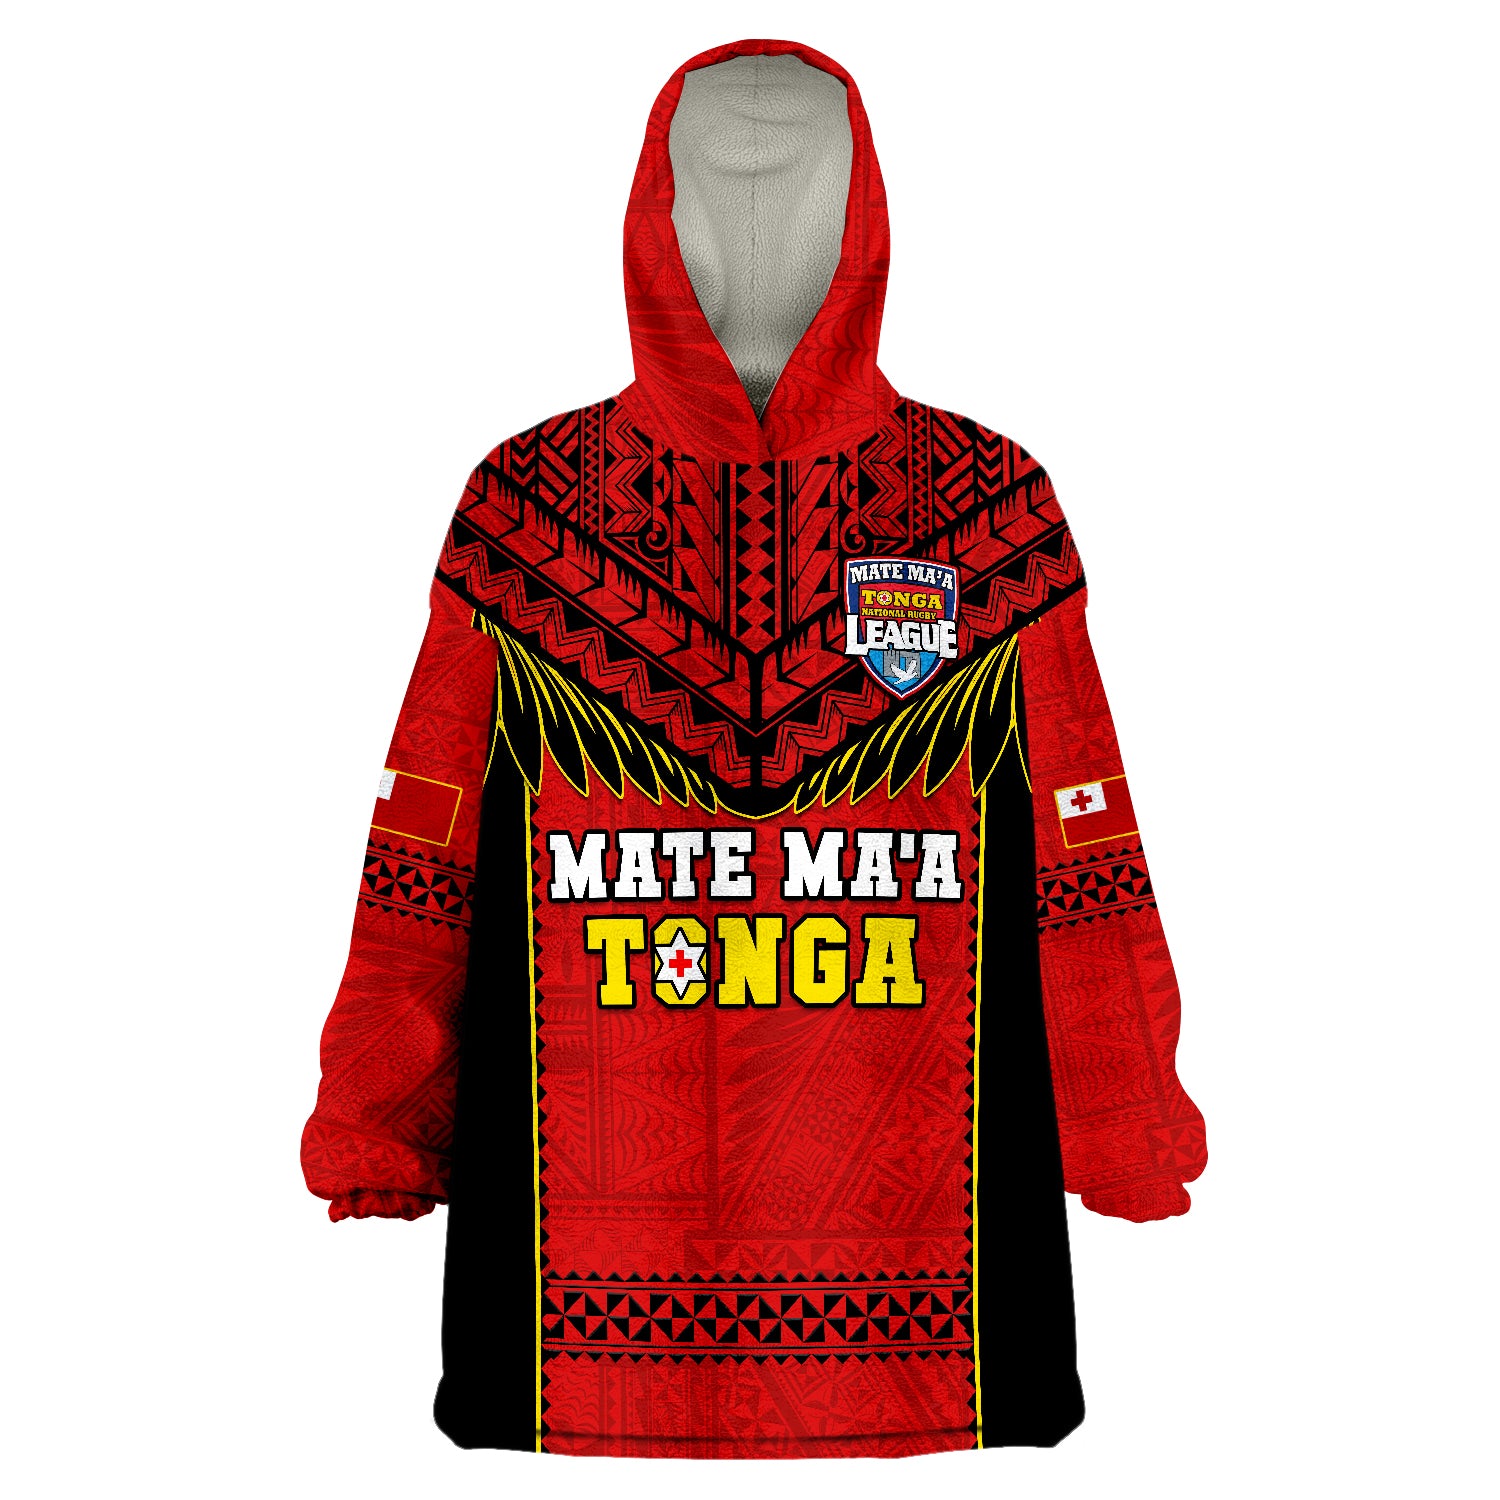 tonga-rugby-mate-maa-tonga-pacific-ngatu-black-wearable-blanket-hoodie